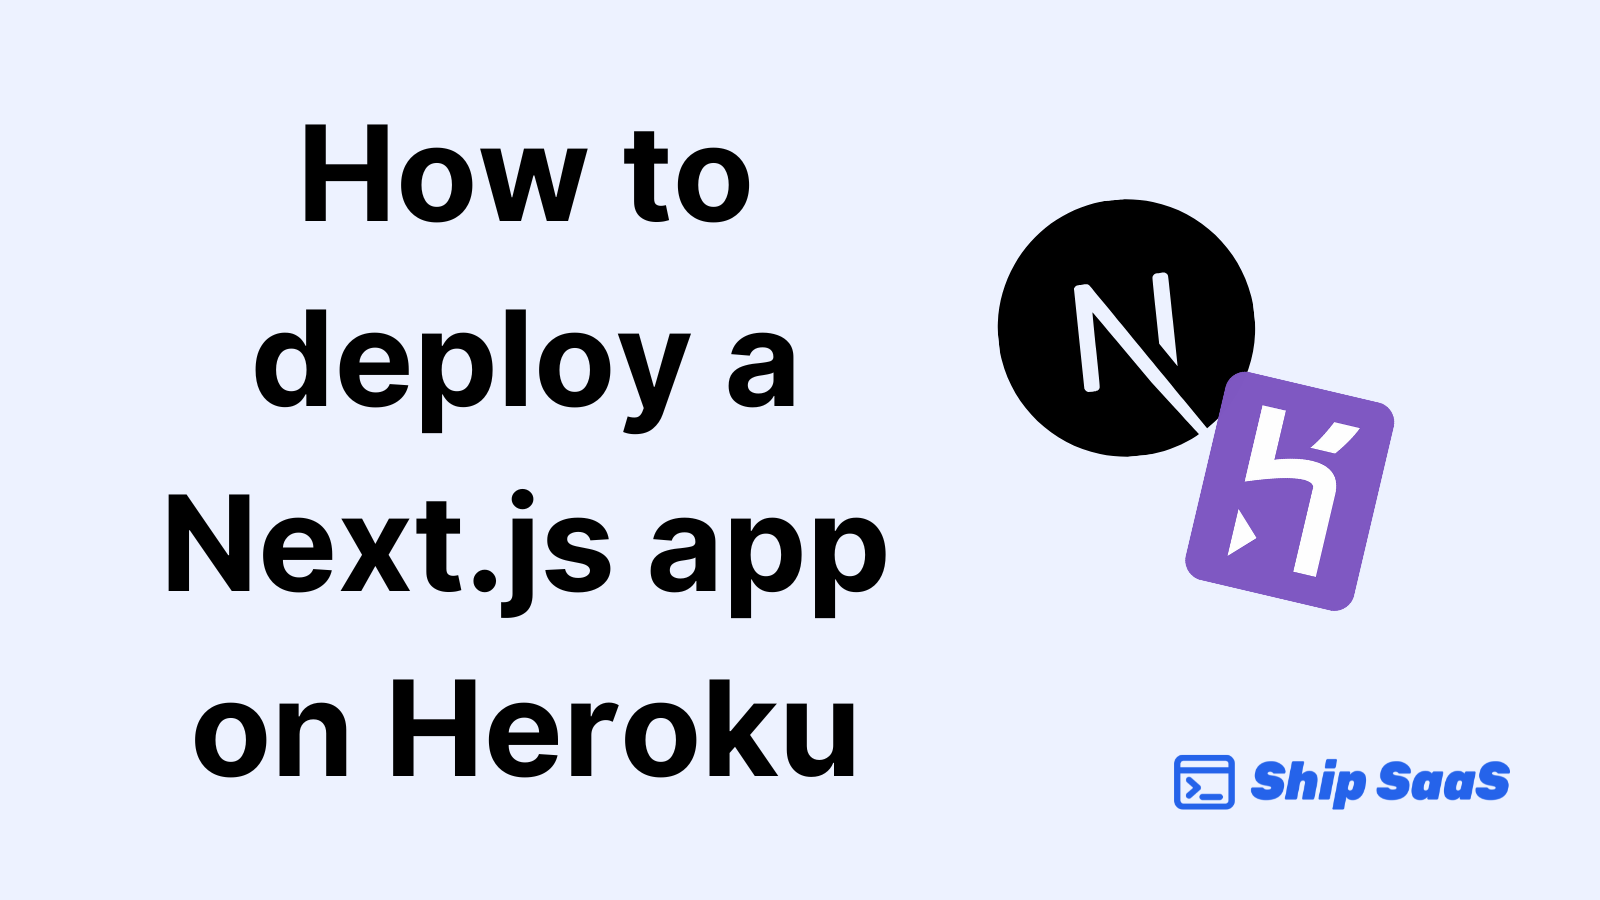 How to deploy a Next.js app on Heroku